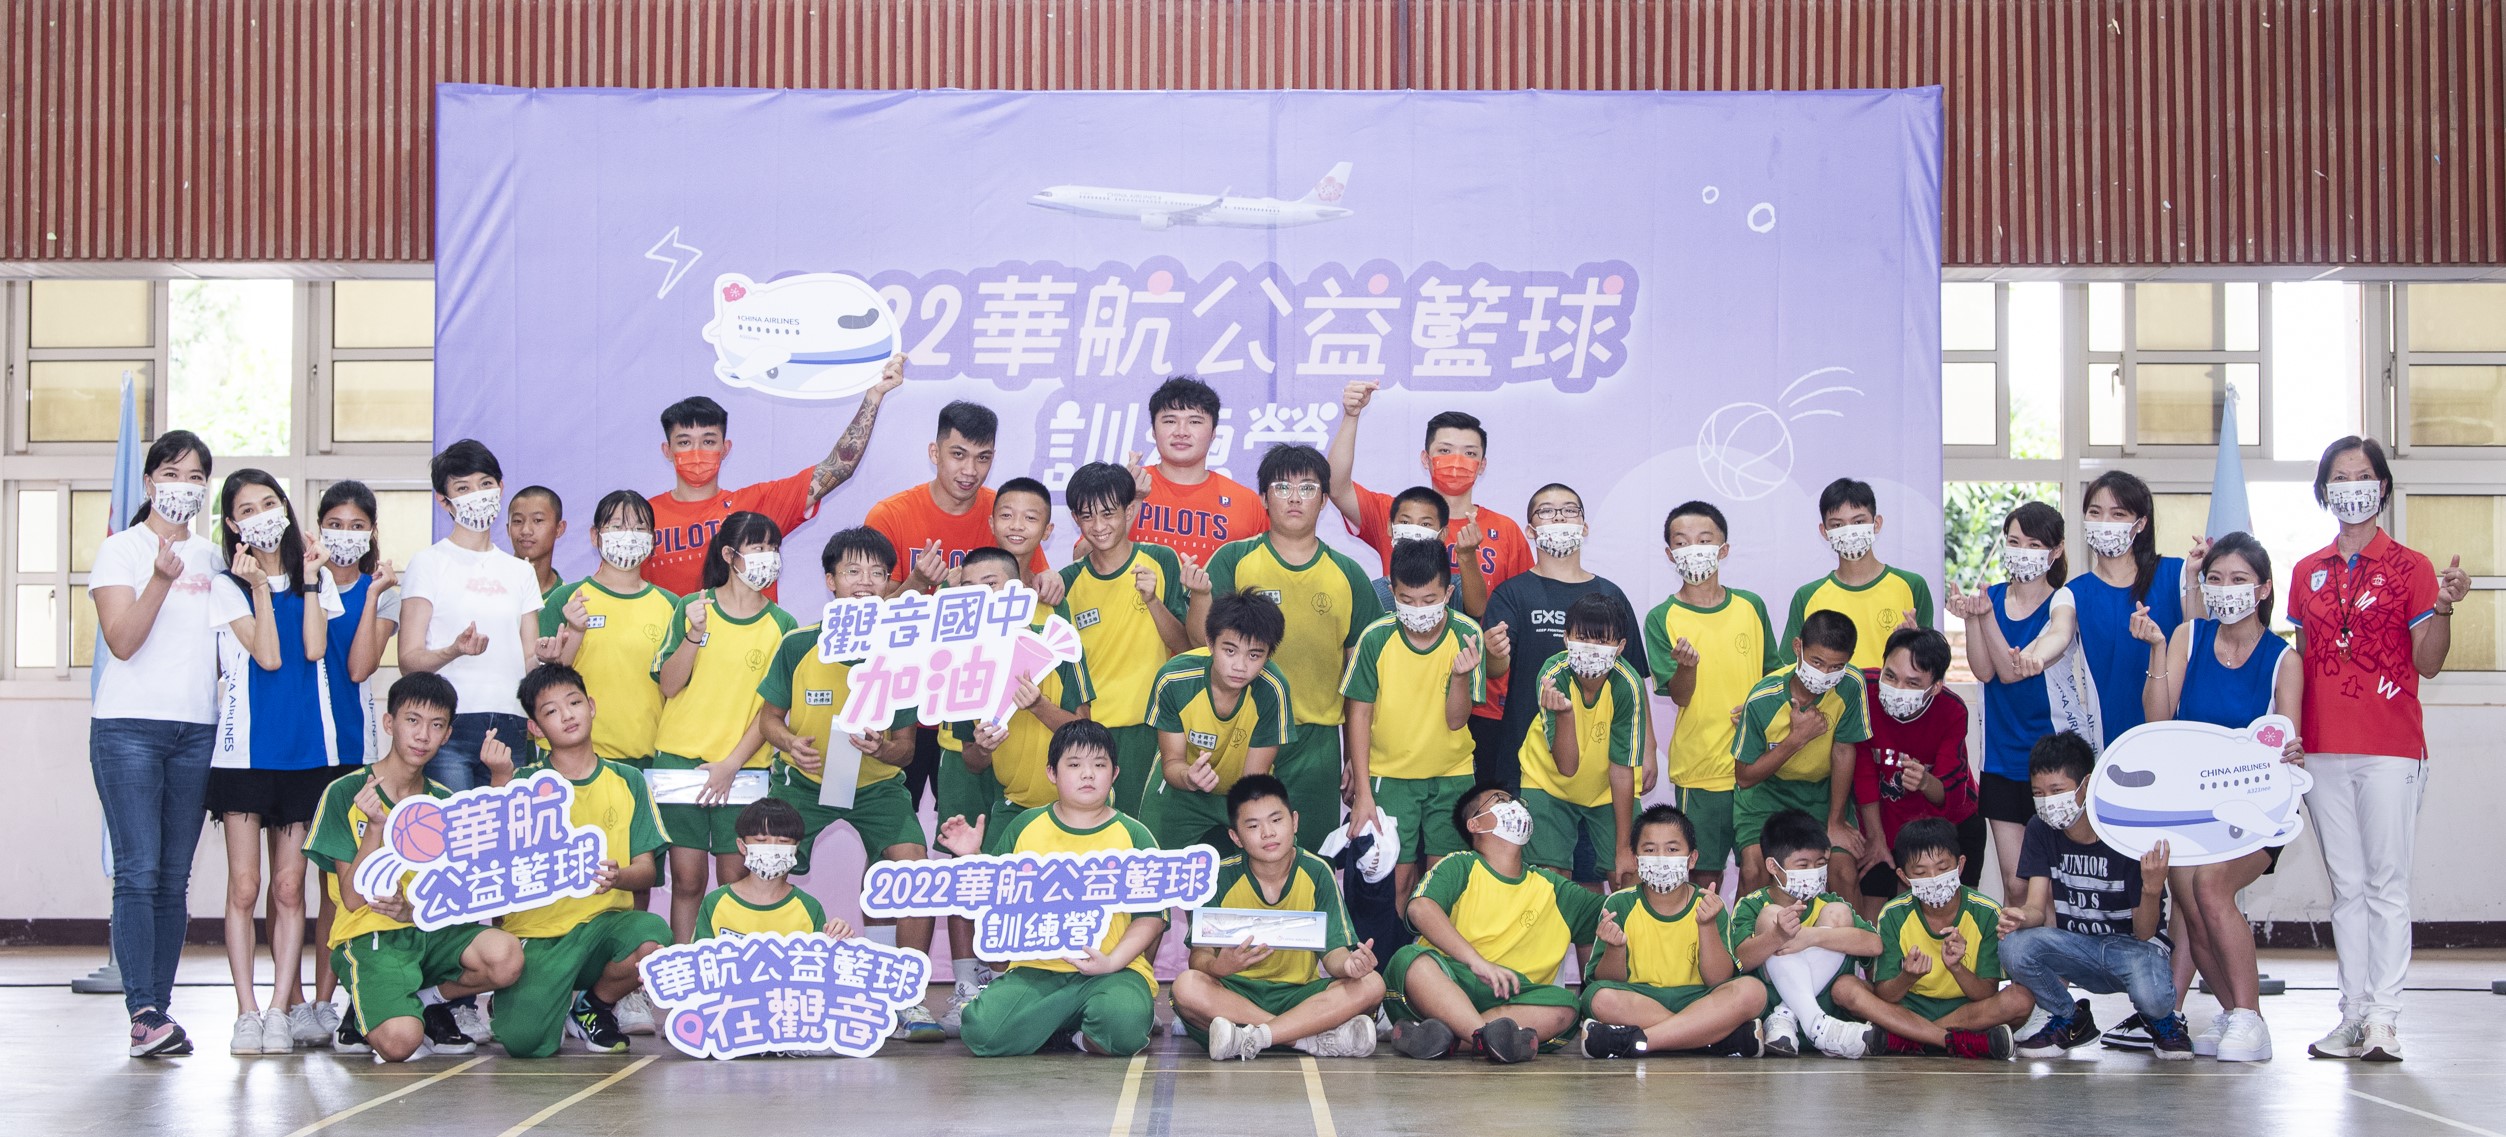 中華航空秉持「中華挺中華」的精神，長期支持本土體育發展，鼓勵觀音國中籃球隊學生勇敢追夢。官方提供